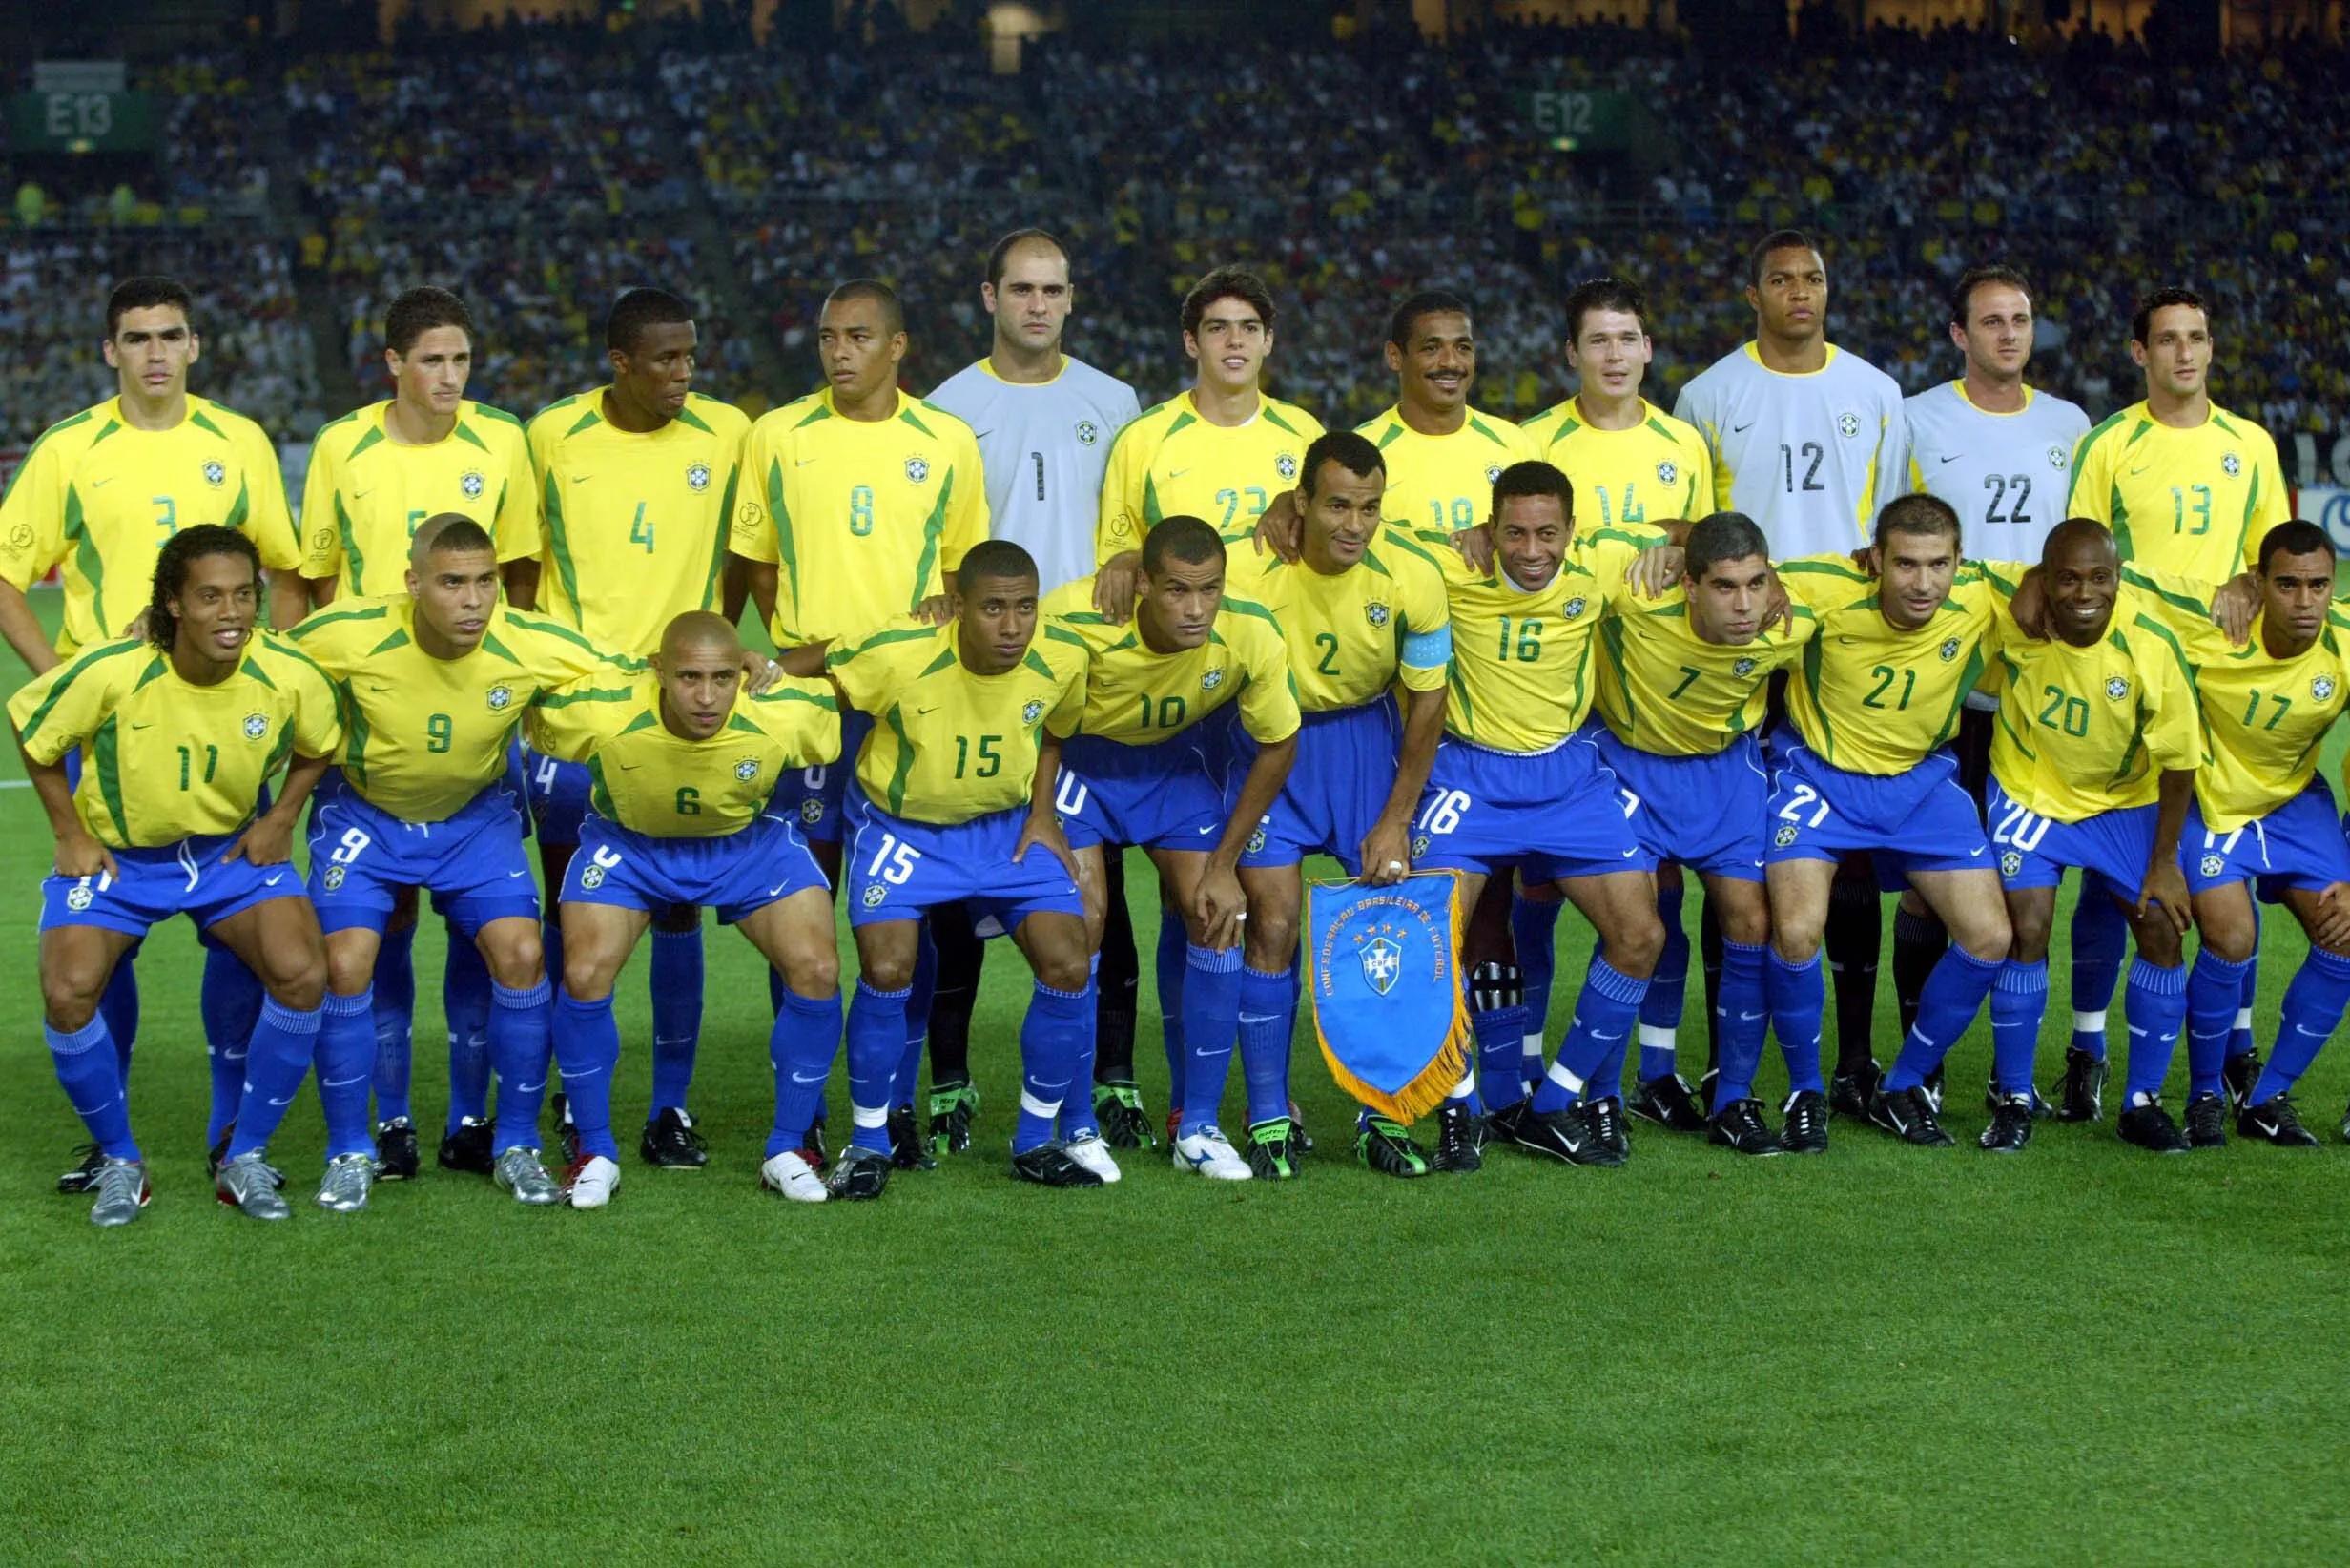 94世界杯巴西队高清全家福(细数历年世界最佳球队英国《世界足球